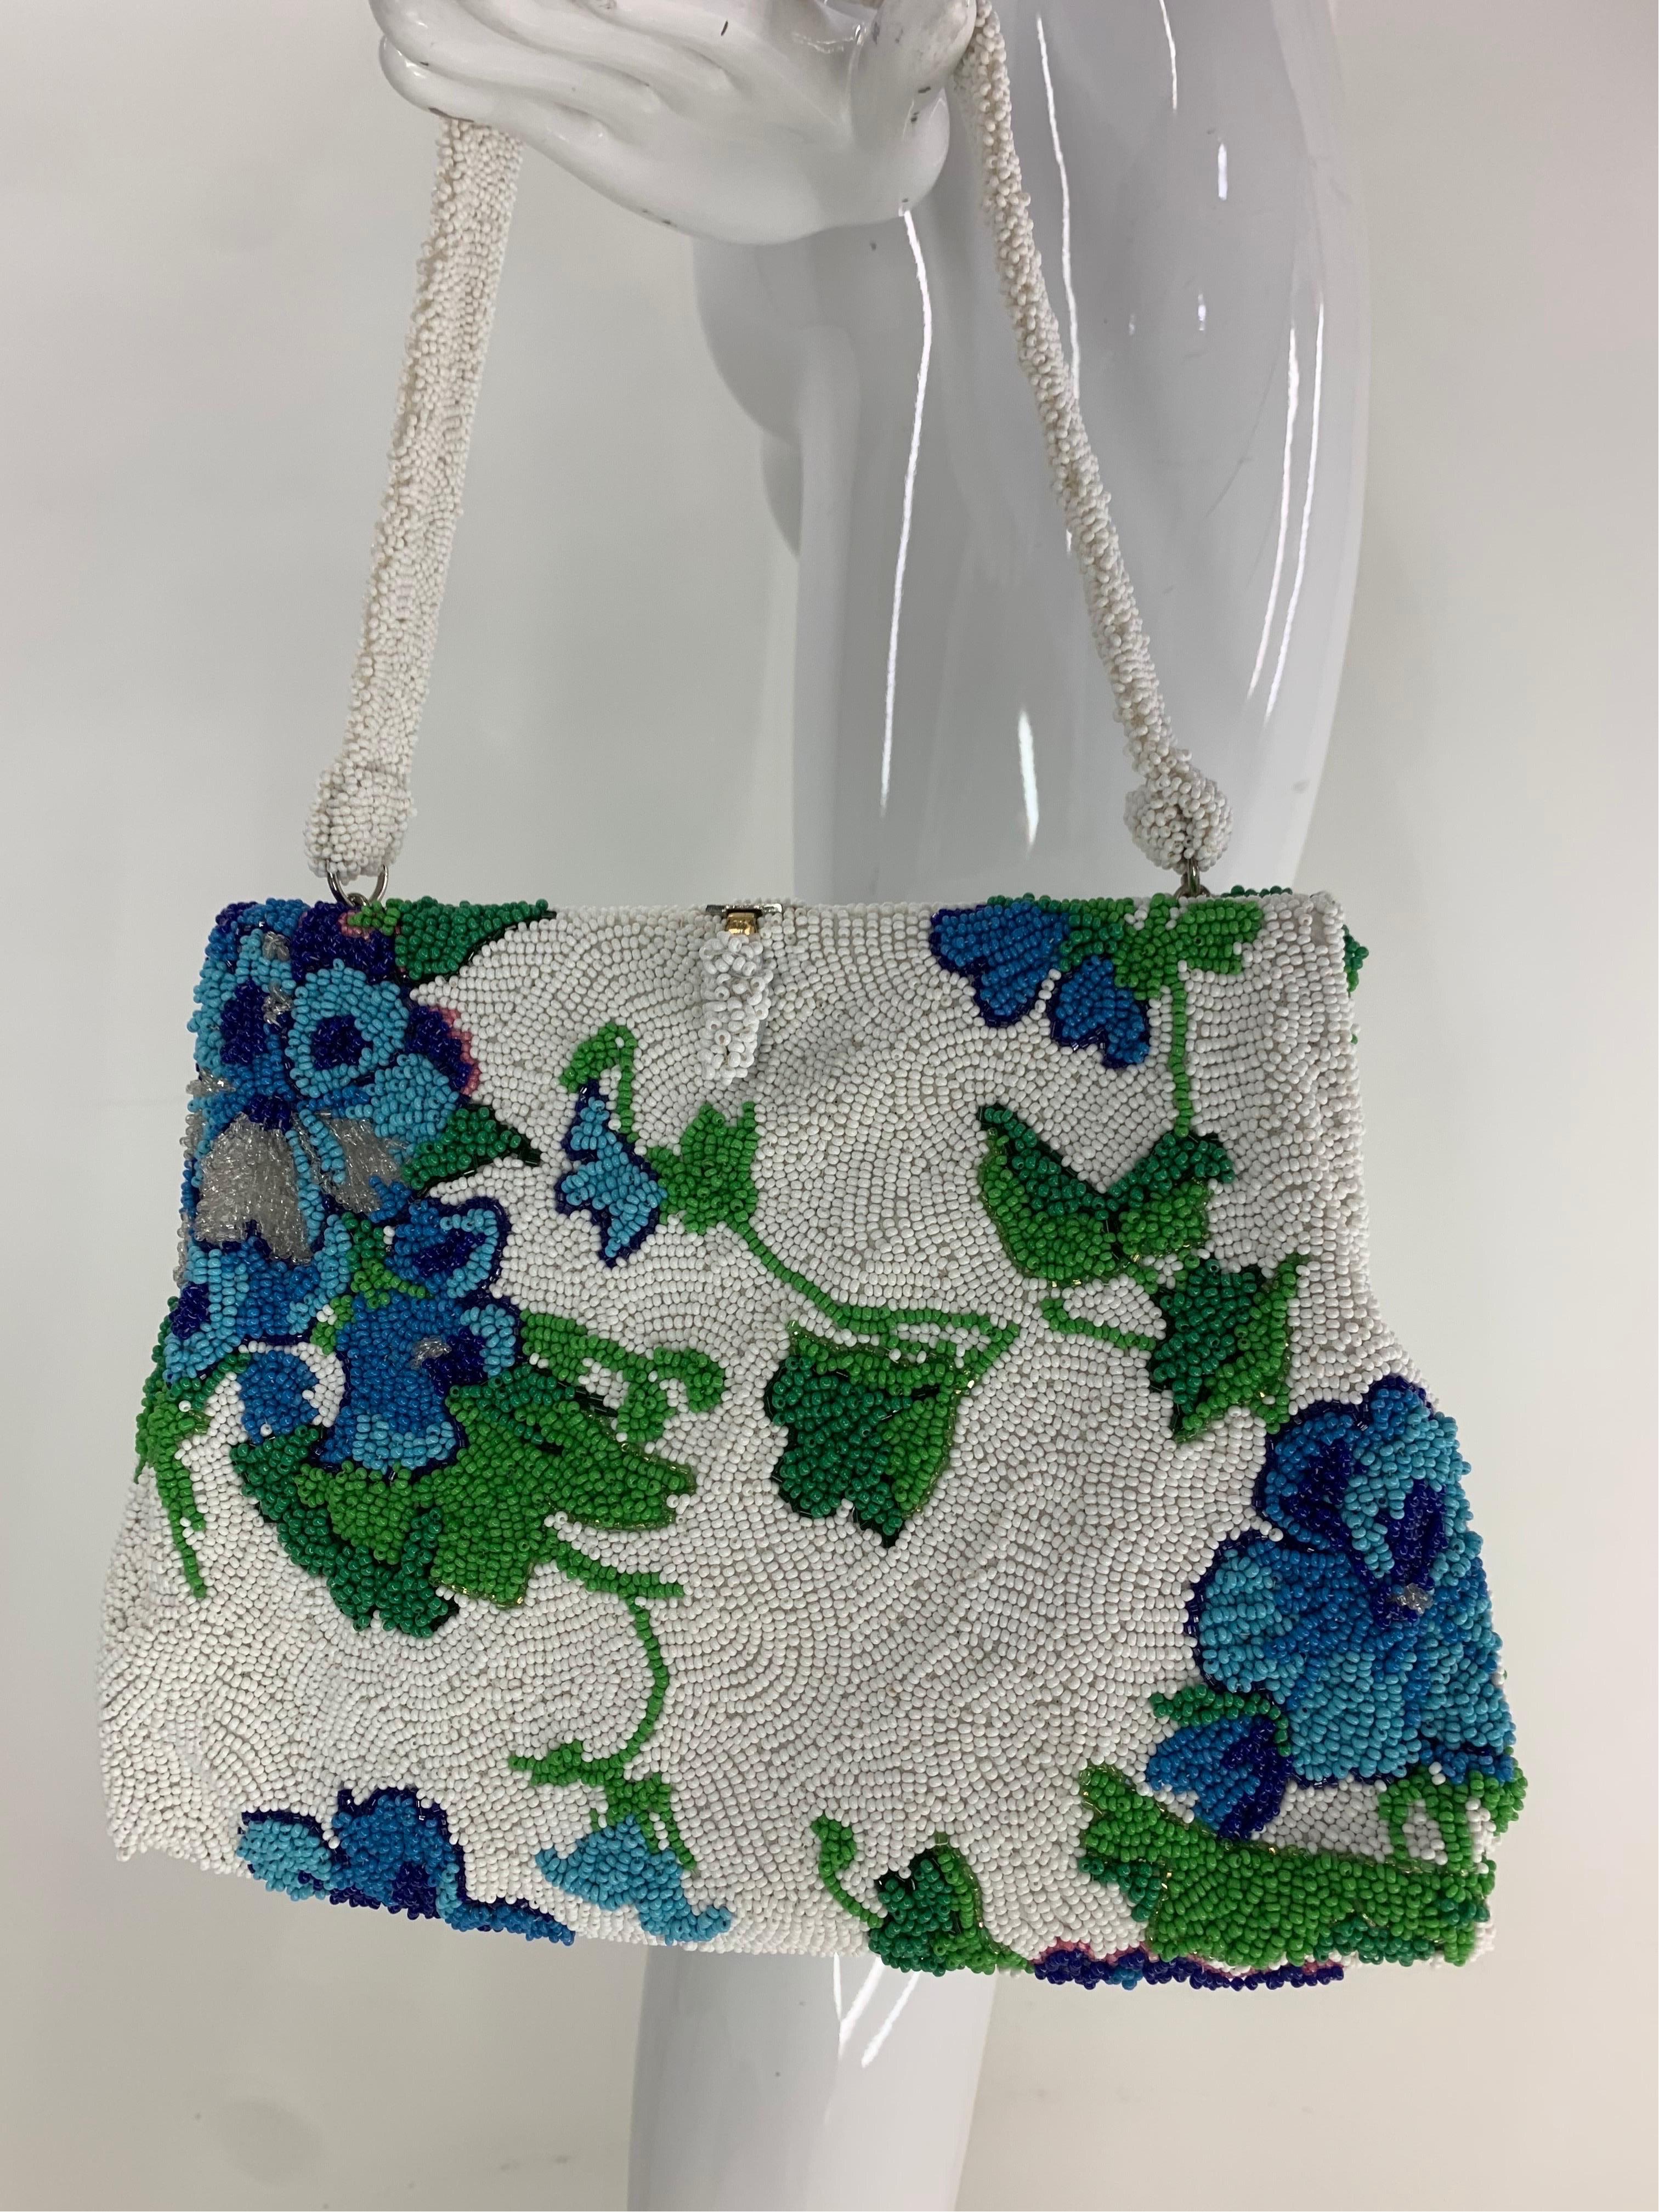 1950 Koret Tresor Stunning Floral Beaded Handtasche in Grün & Blau auf weißem Hintergrund. Absolut charmant und eine sehr funktionale Größe Handtasche von einem der höchsten Qualität Hersteller der Zeit. 